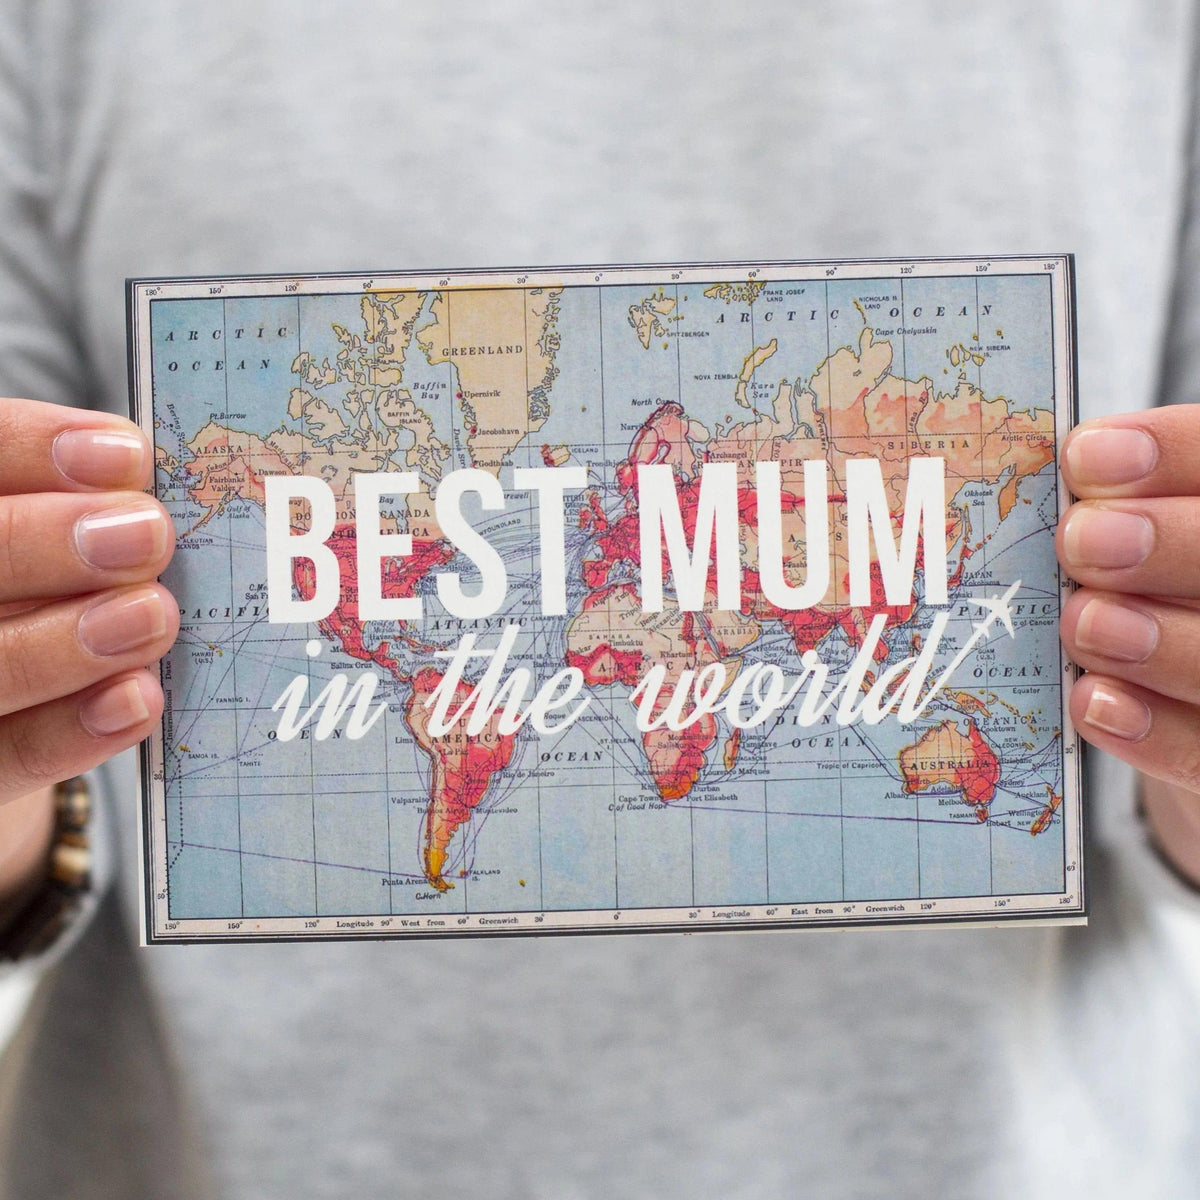 'Best Mum In The World' Card for Mum Cards for Mum Of Life & Lemons 